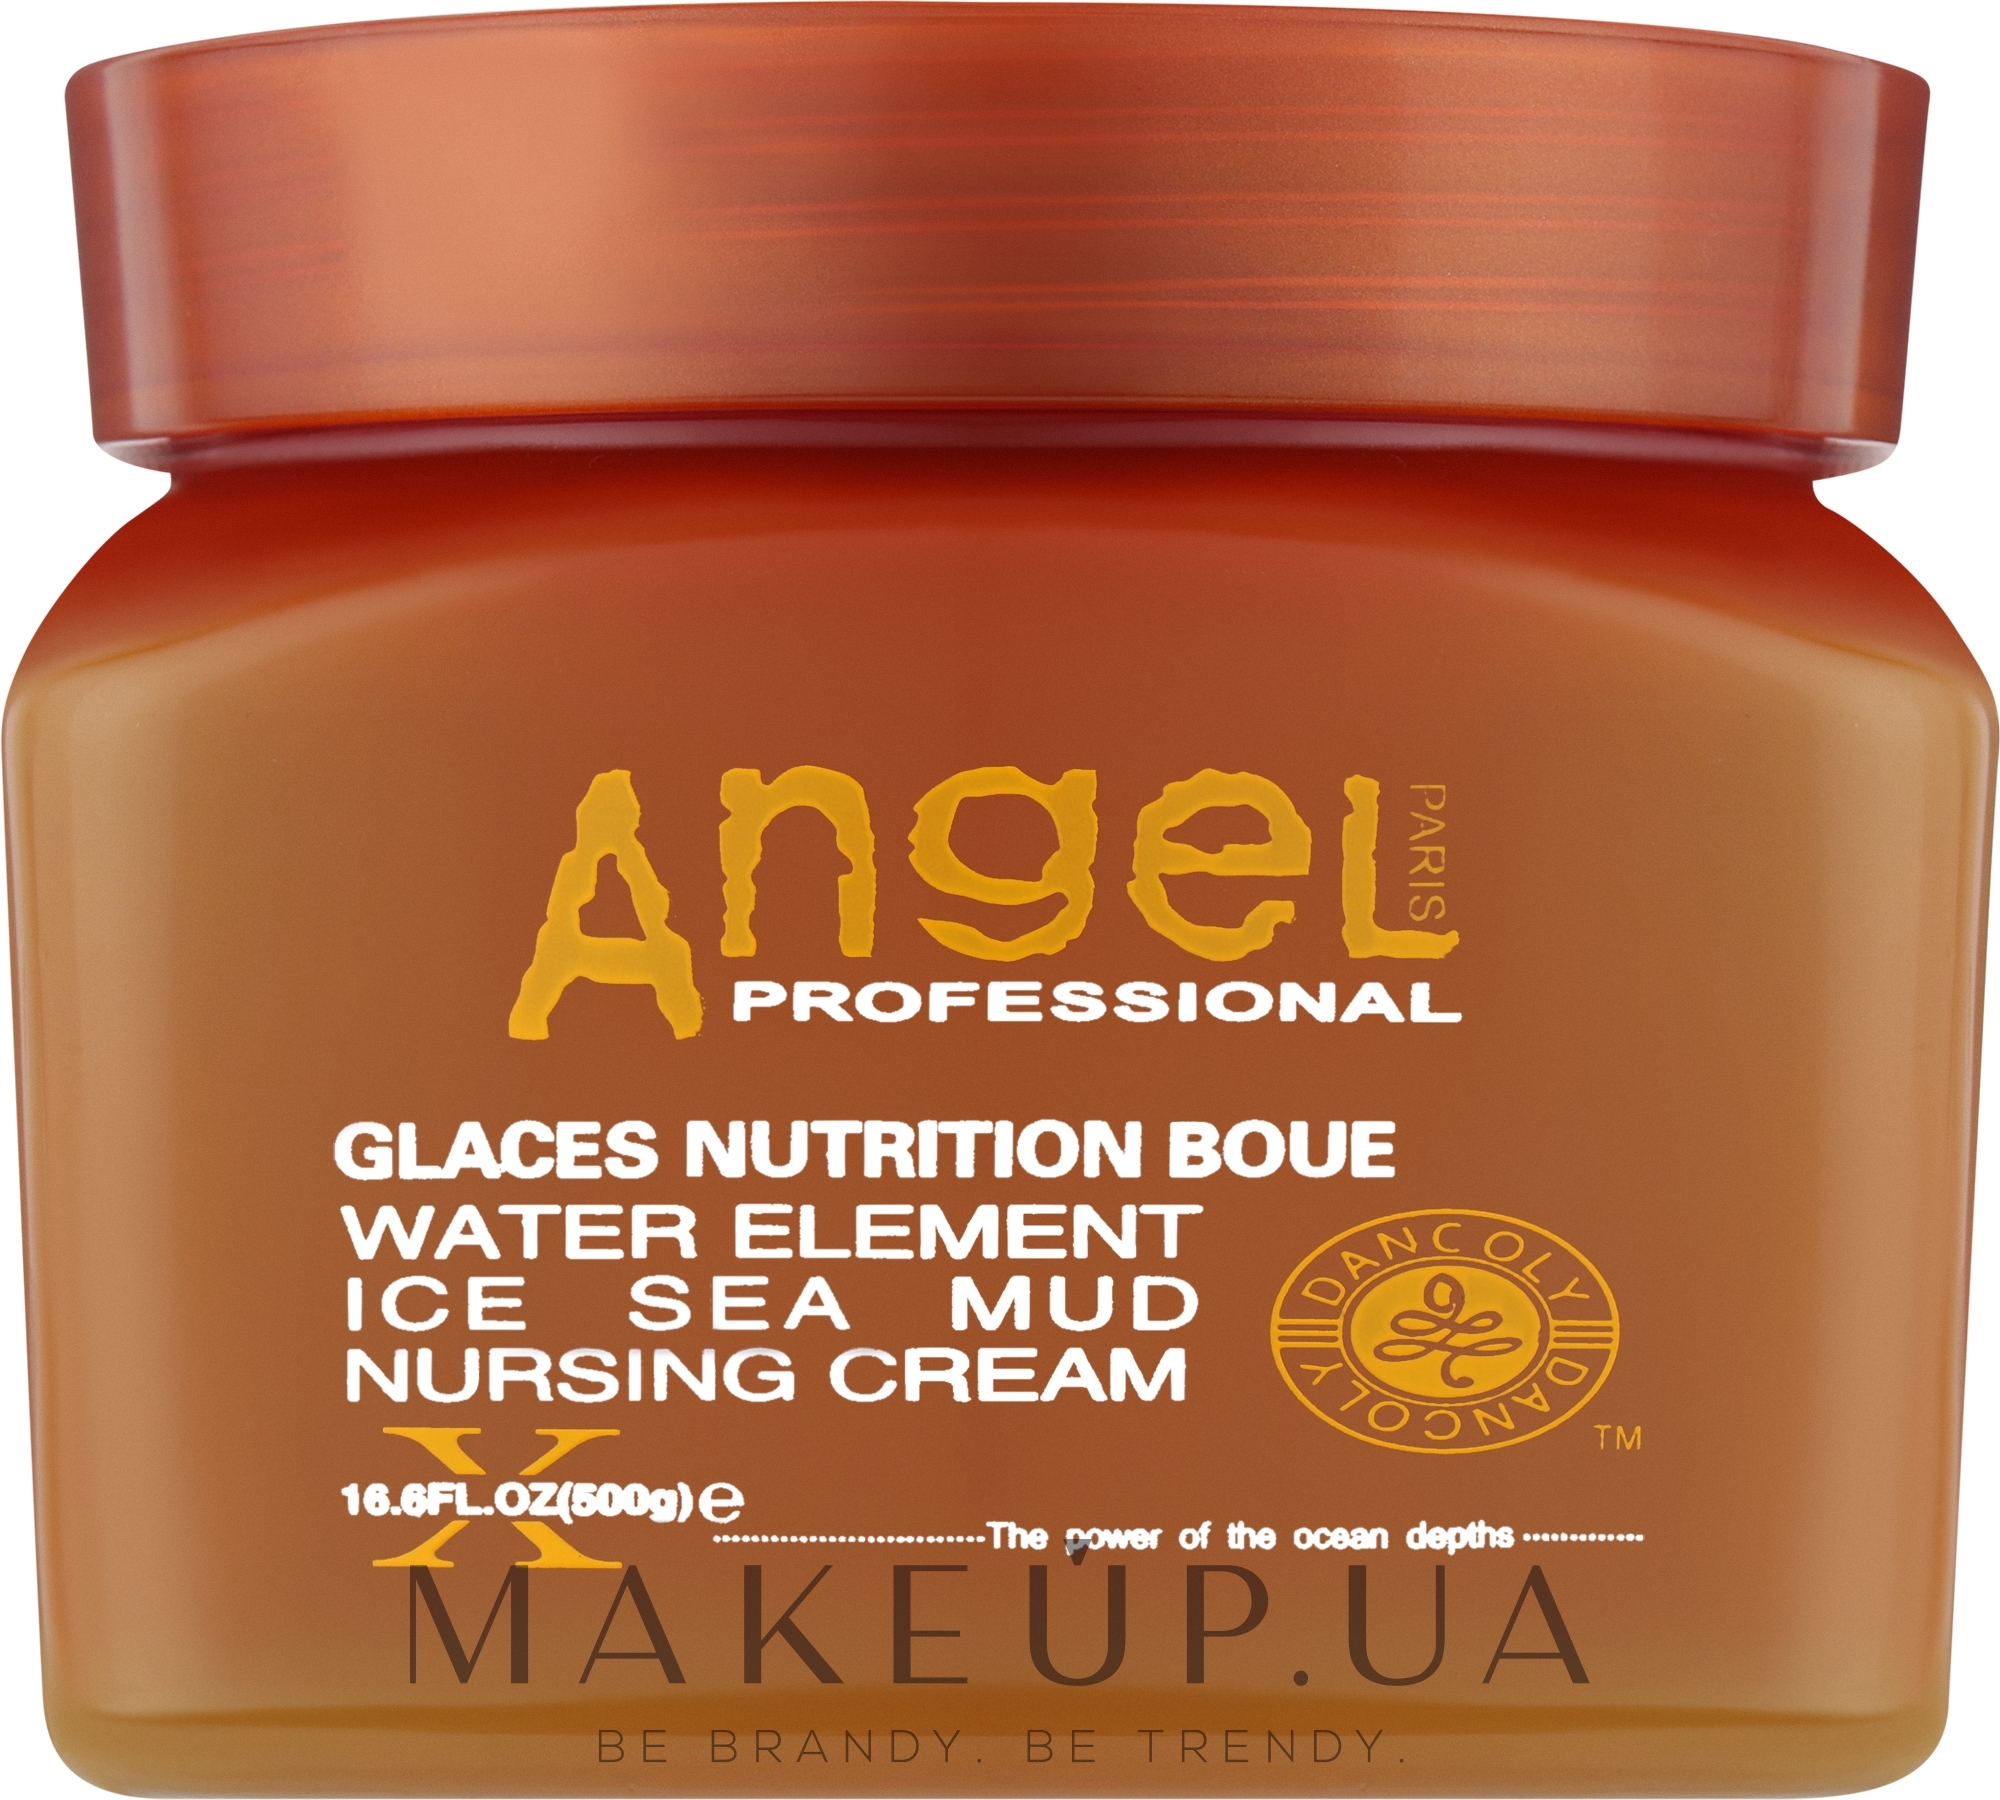 Питательный крем для волос с замороженной морской грязью - Angel Professional Paris Water Element Ice Sea Mud Nursing Cream — фото 500g